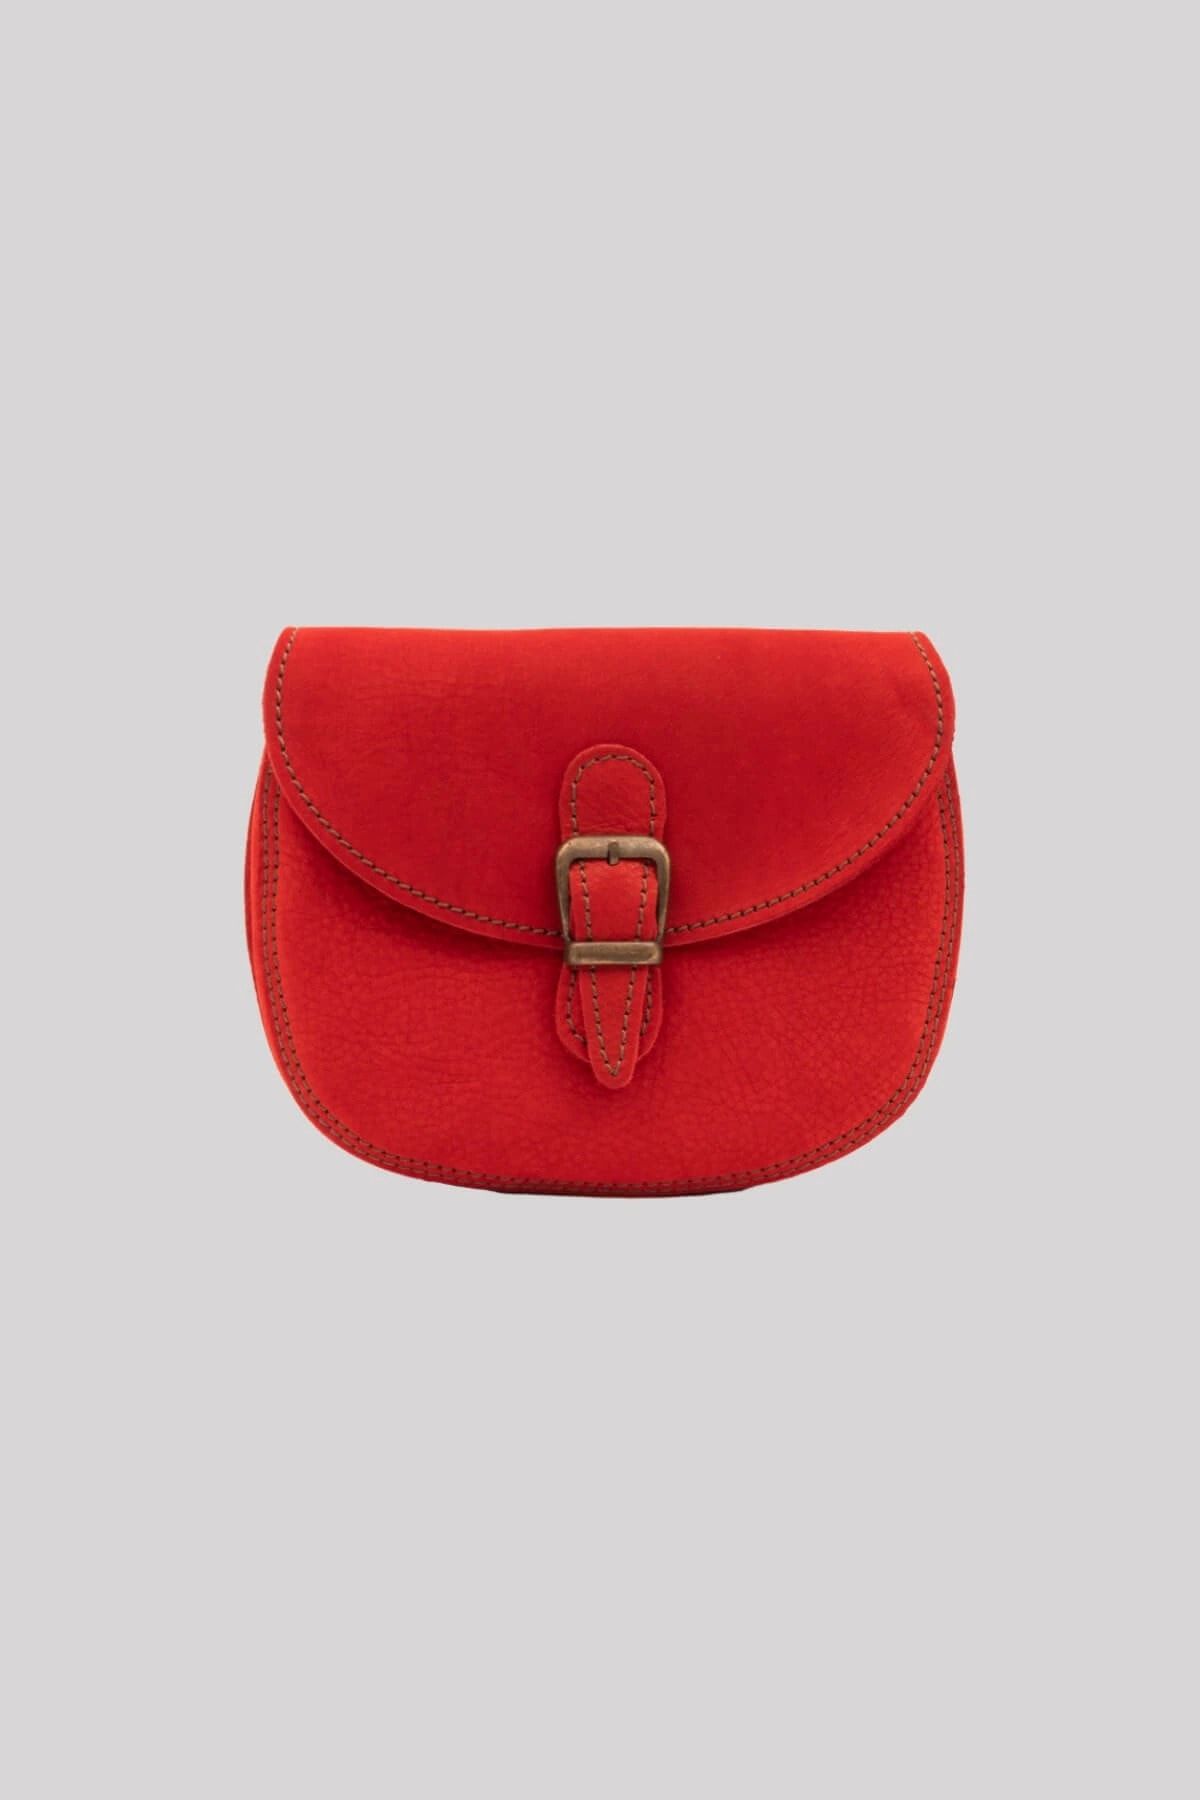 Galata Leather El Yapımı Kadın Deri Postacı Çantası - Sevılla - Kırmızı